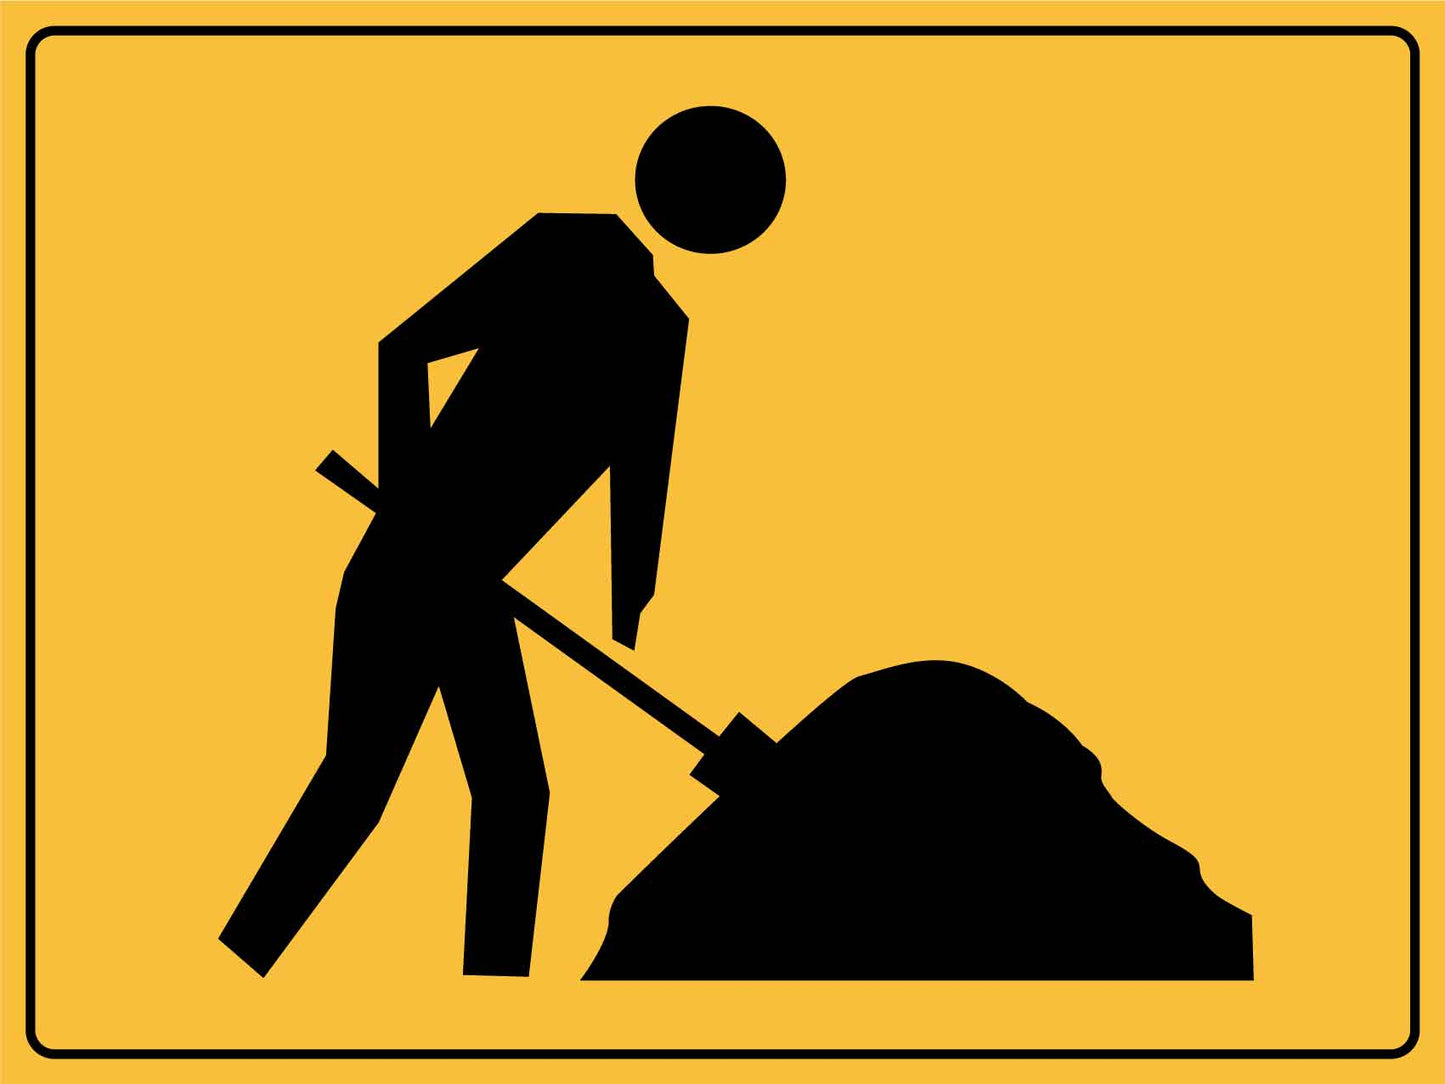 Caution Workmen Ahead Image Sign